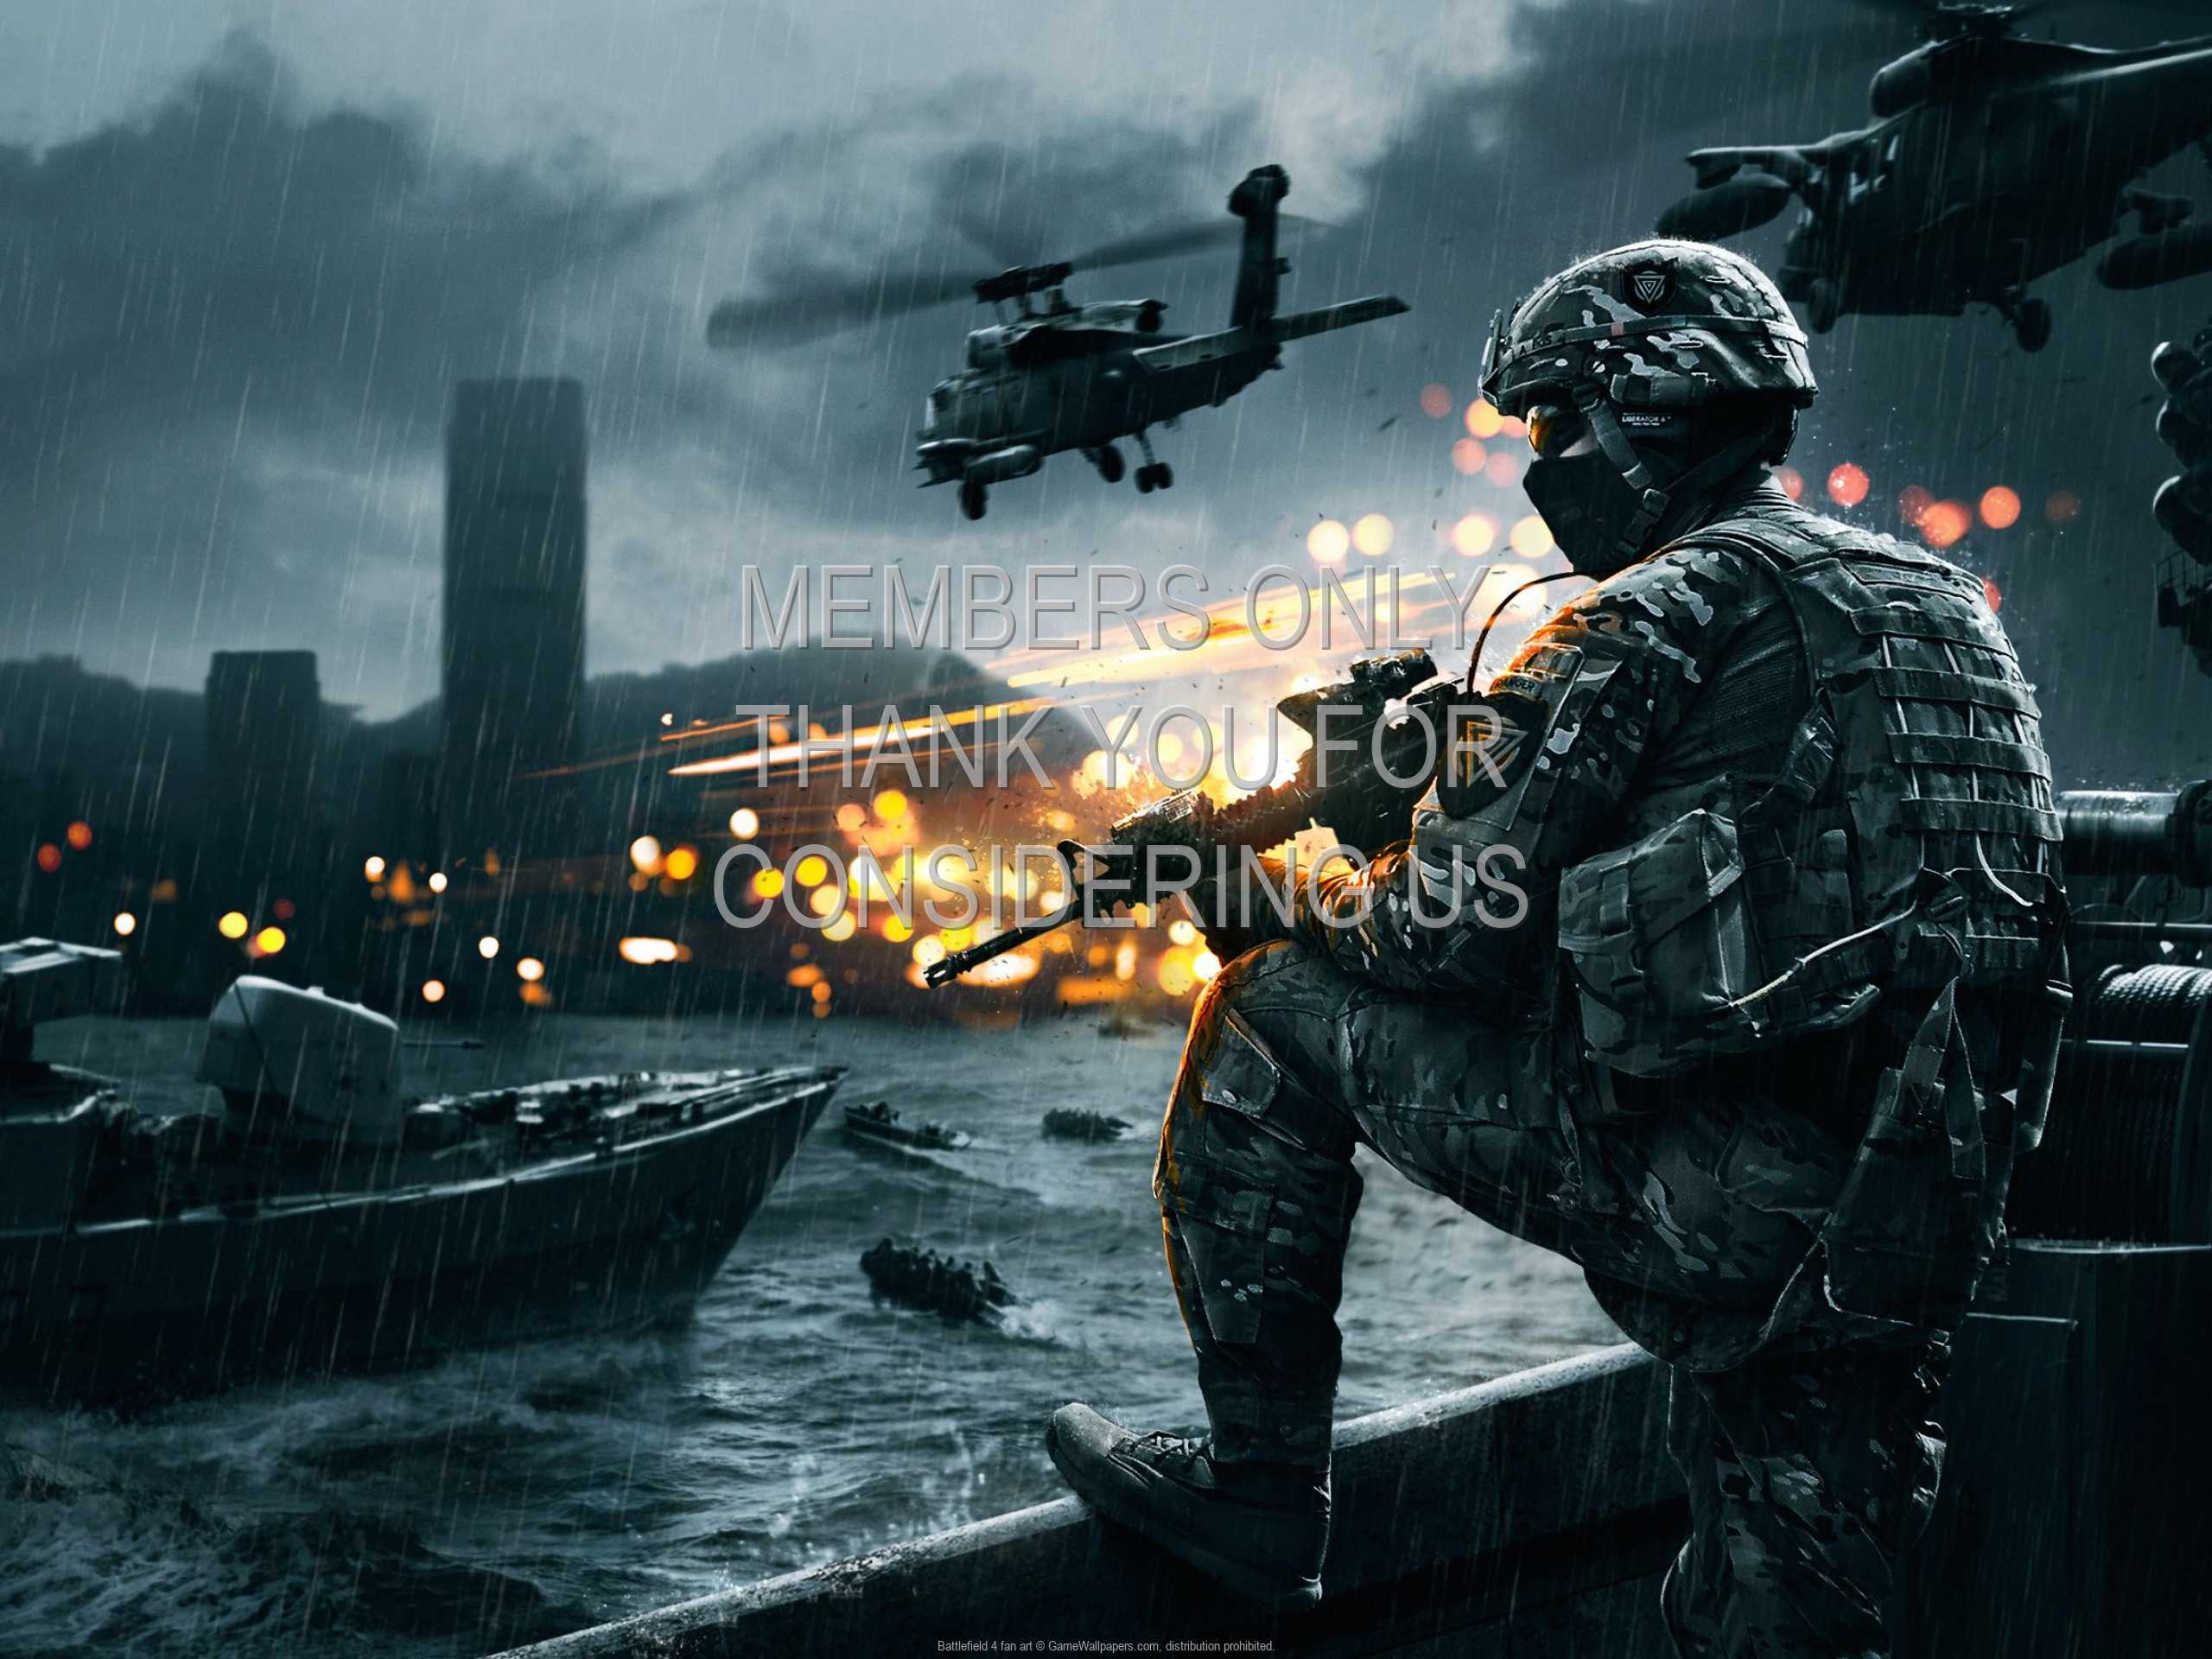 Battlefield 4 fan art 1080p Horizontal Mobile wallpaper or background 01